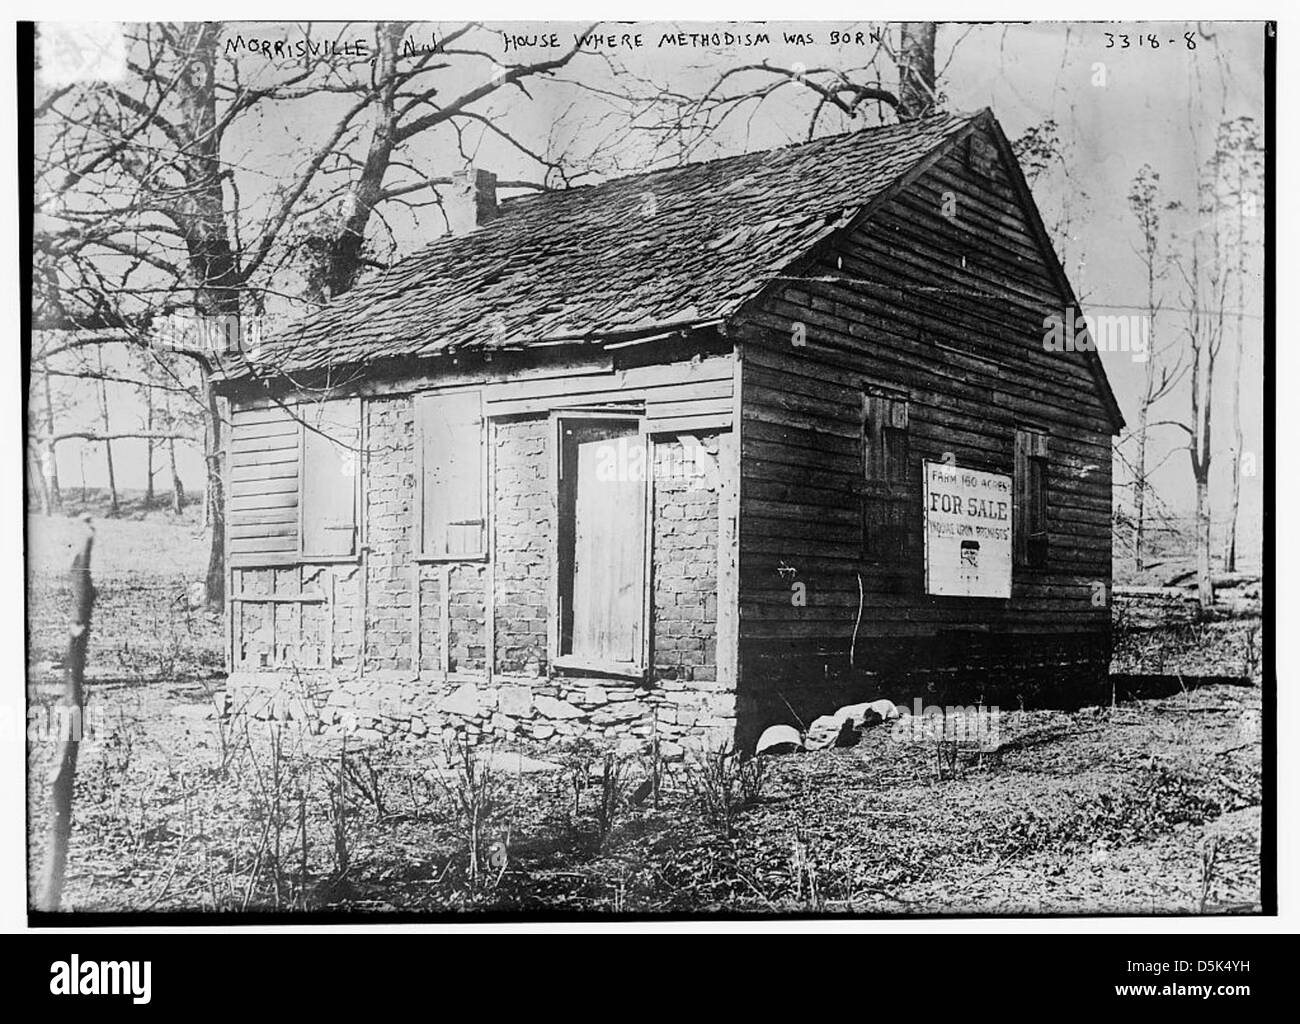 Morrisville, N.J. Haus wo Methodismus ws geboren (LOC) Stockfoto